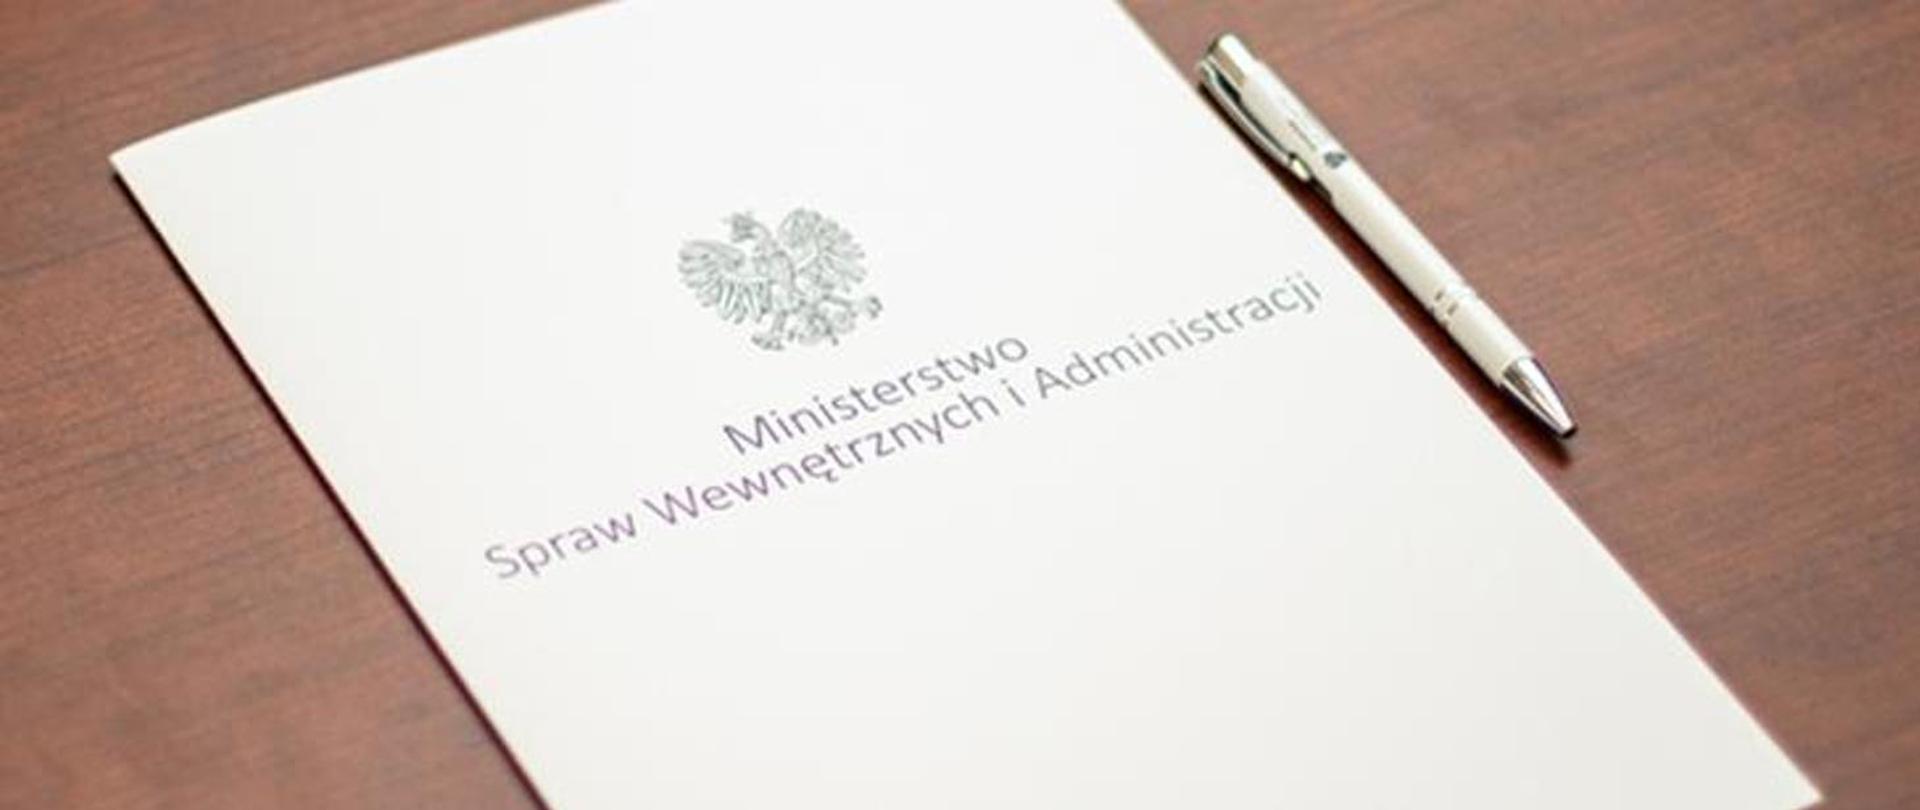 Biała teczka z Orłem i napisem Ministerstwo Spraw Wewnętrznych i Administracji leży na stole. Obok leży biały długopis.